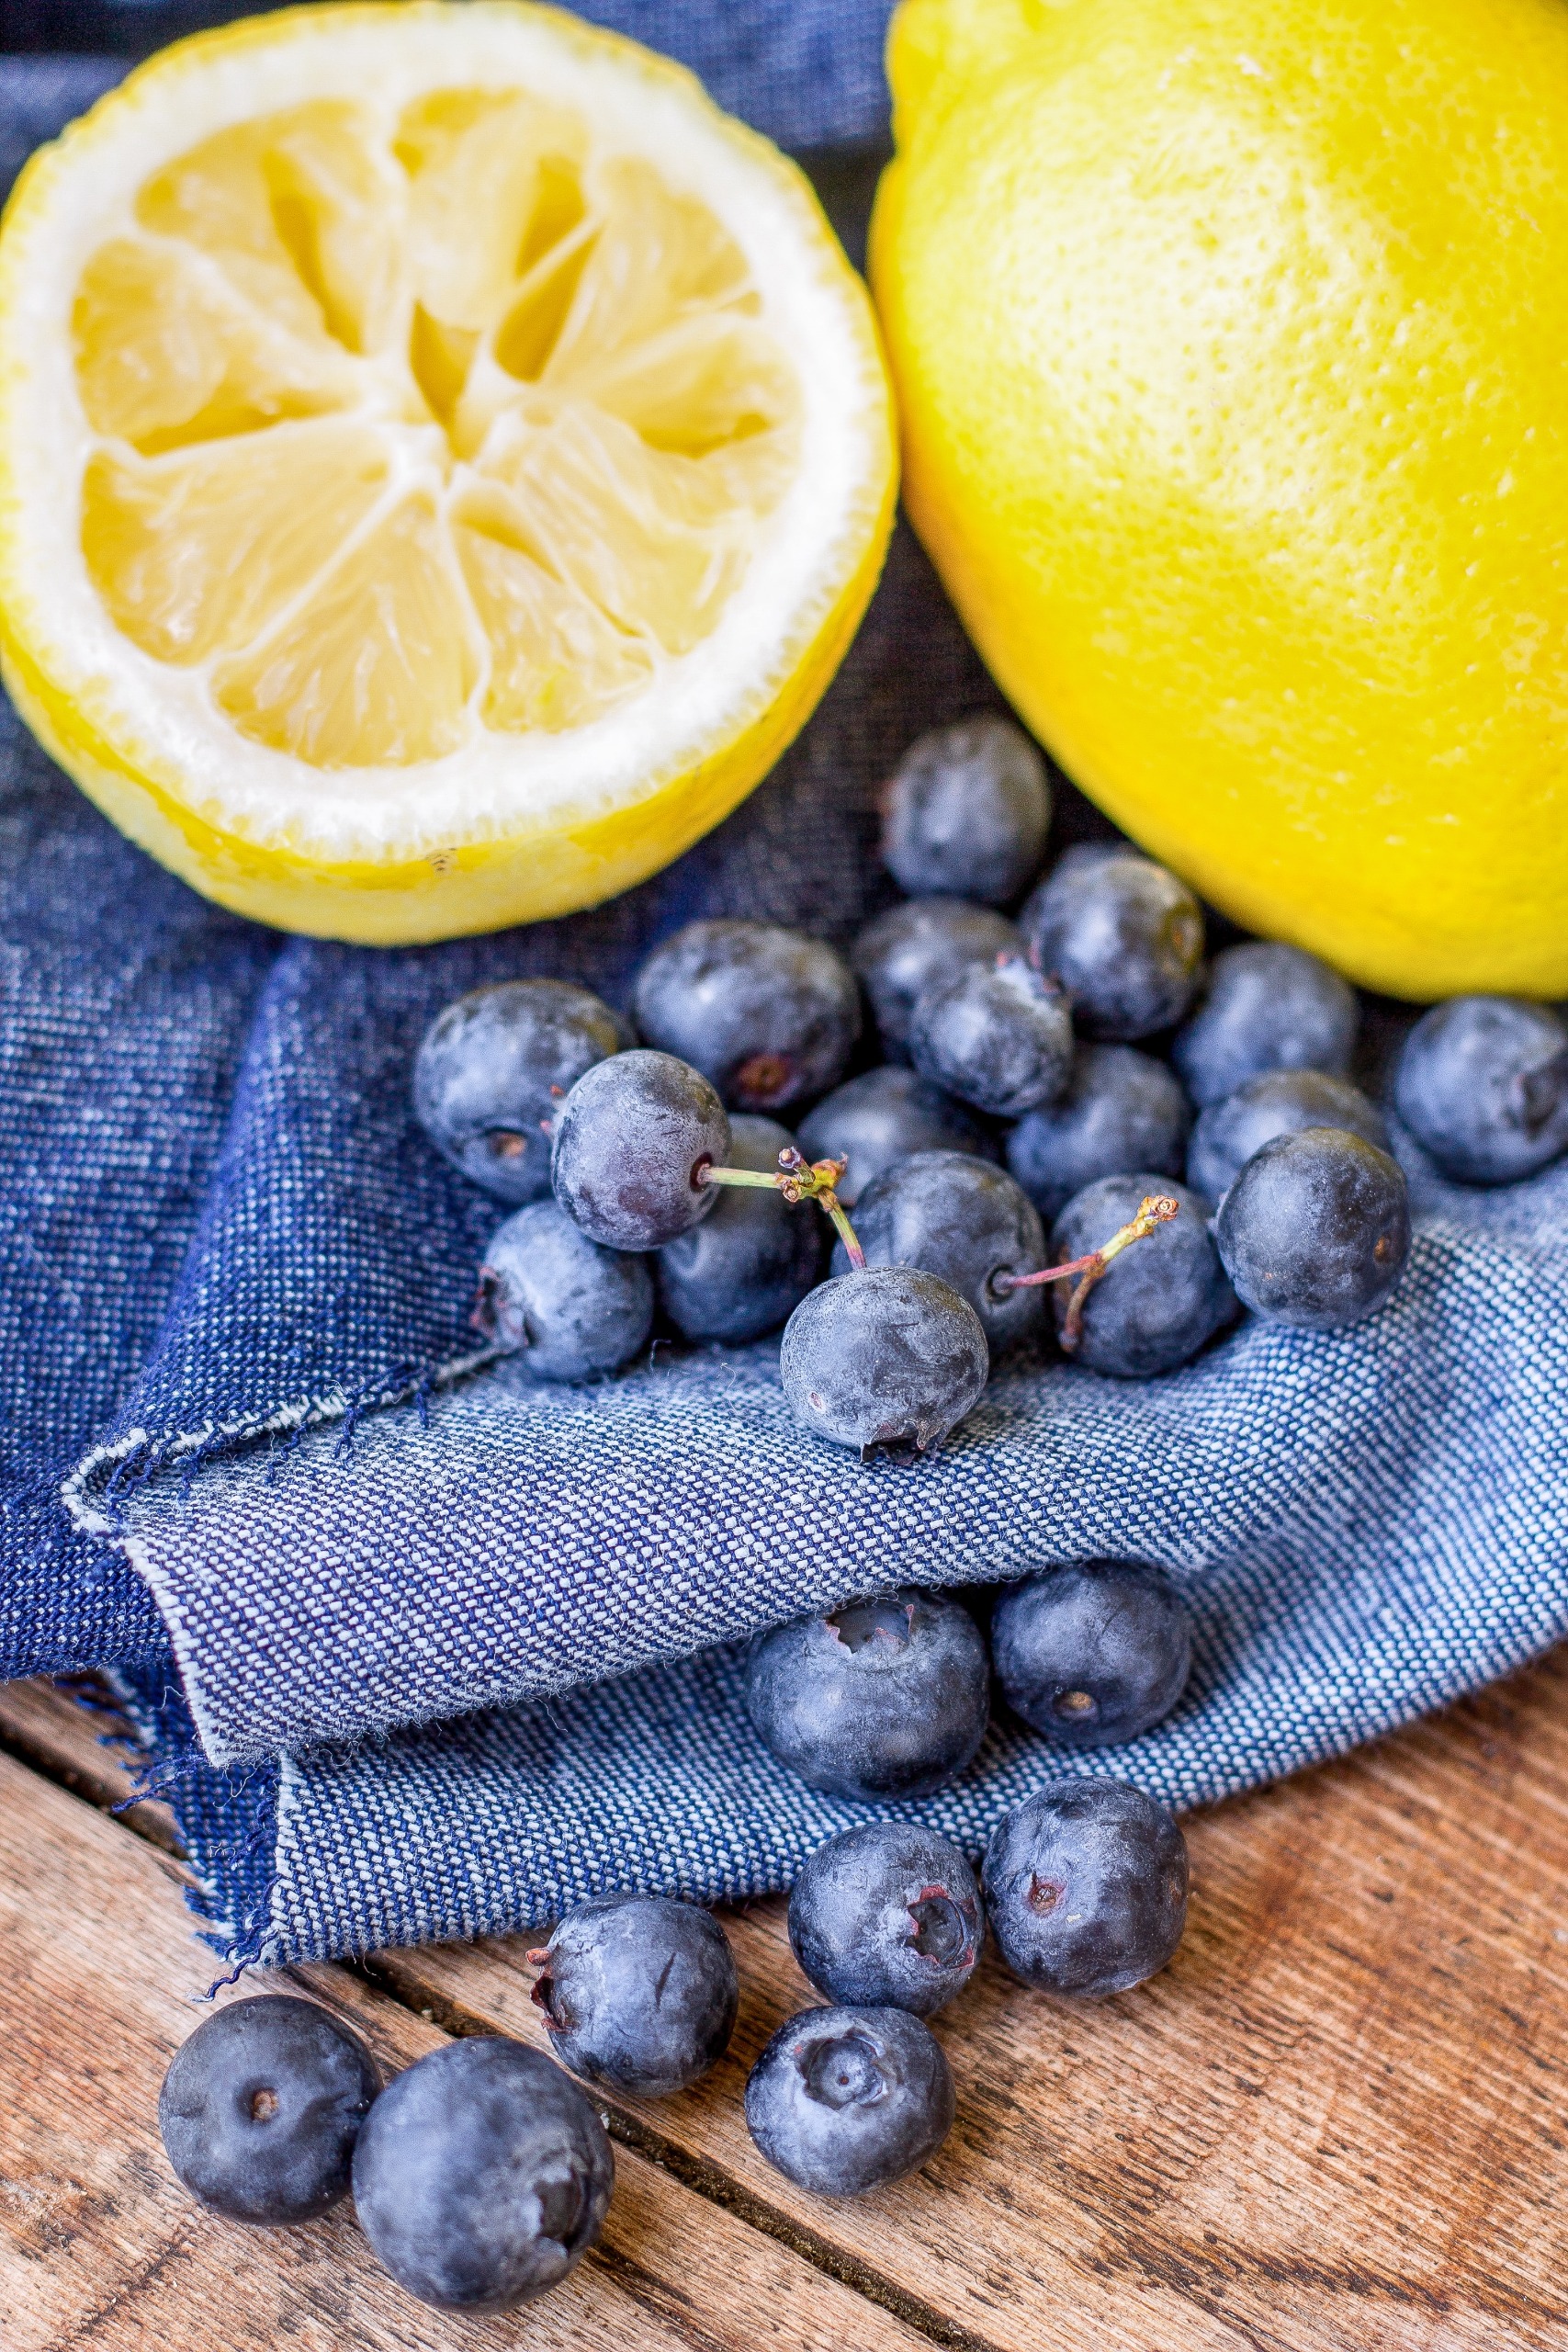 blueberries and lemons